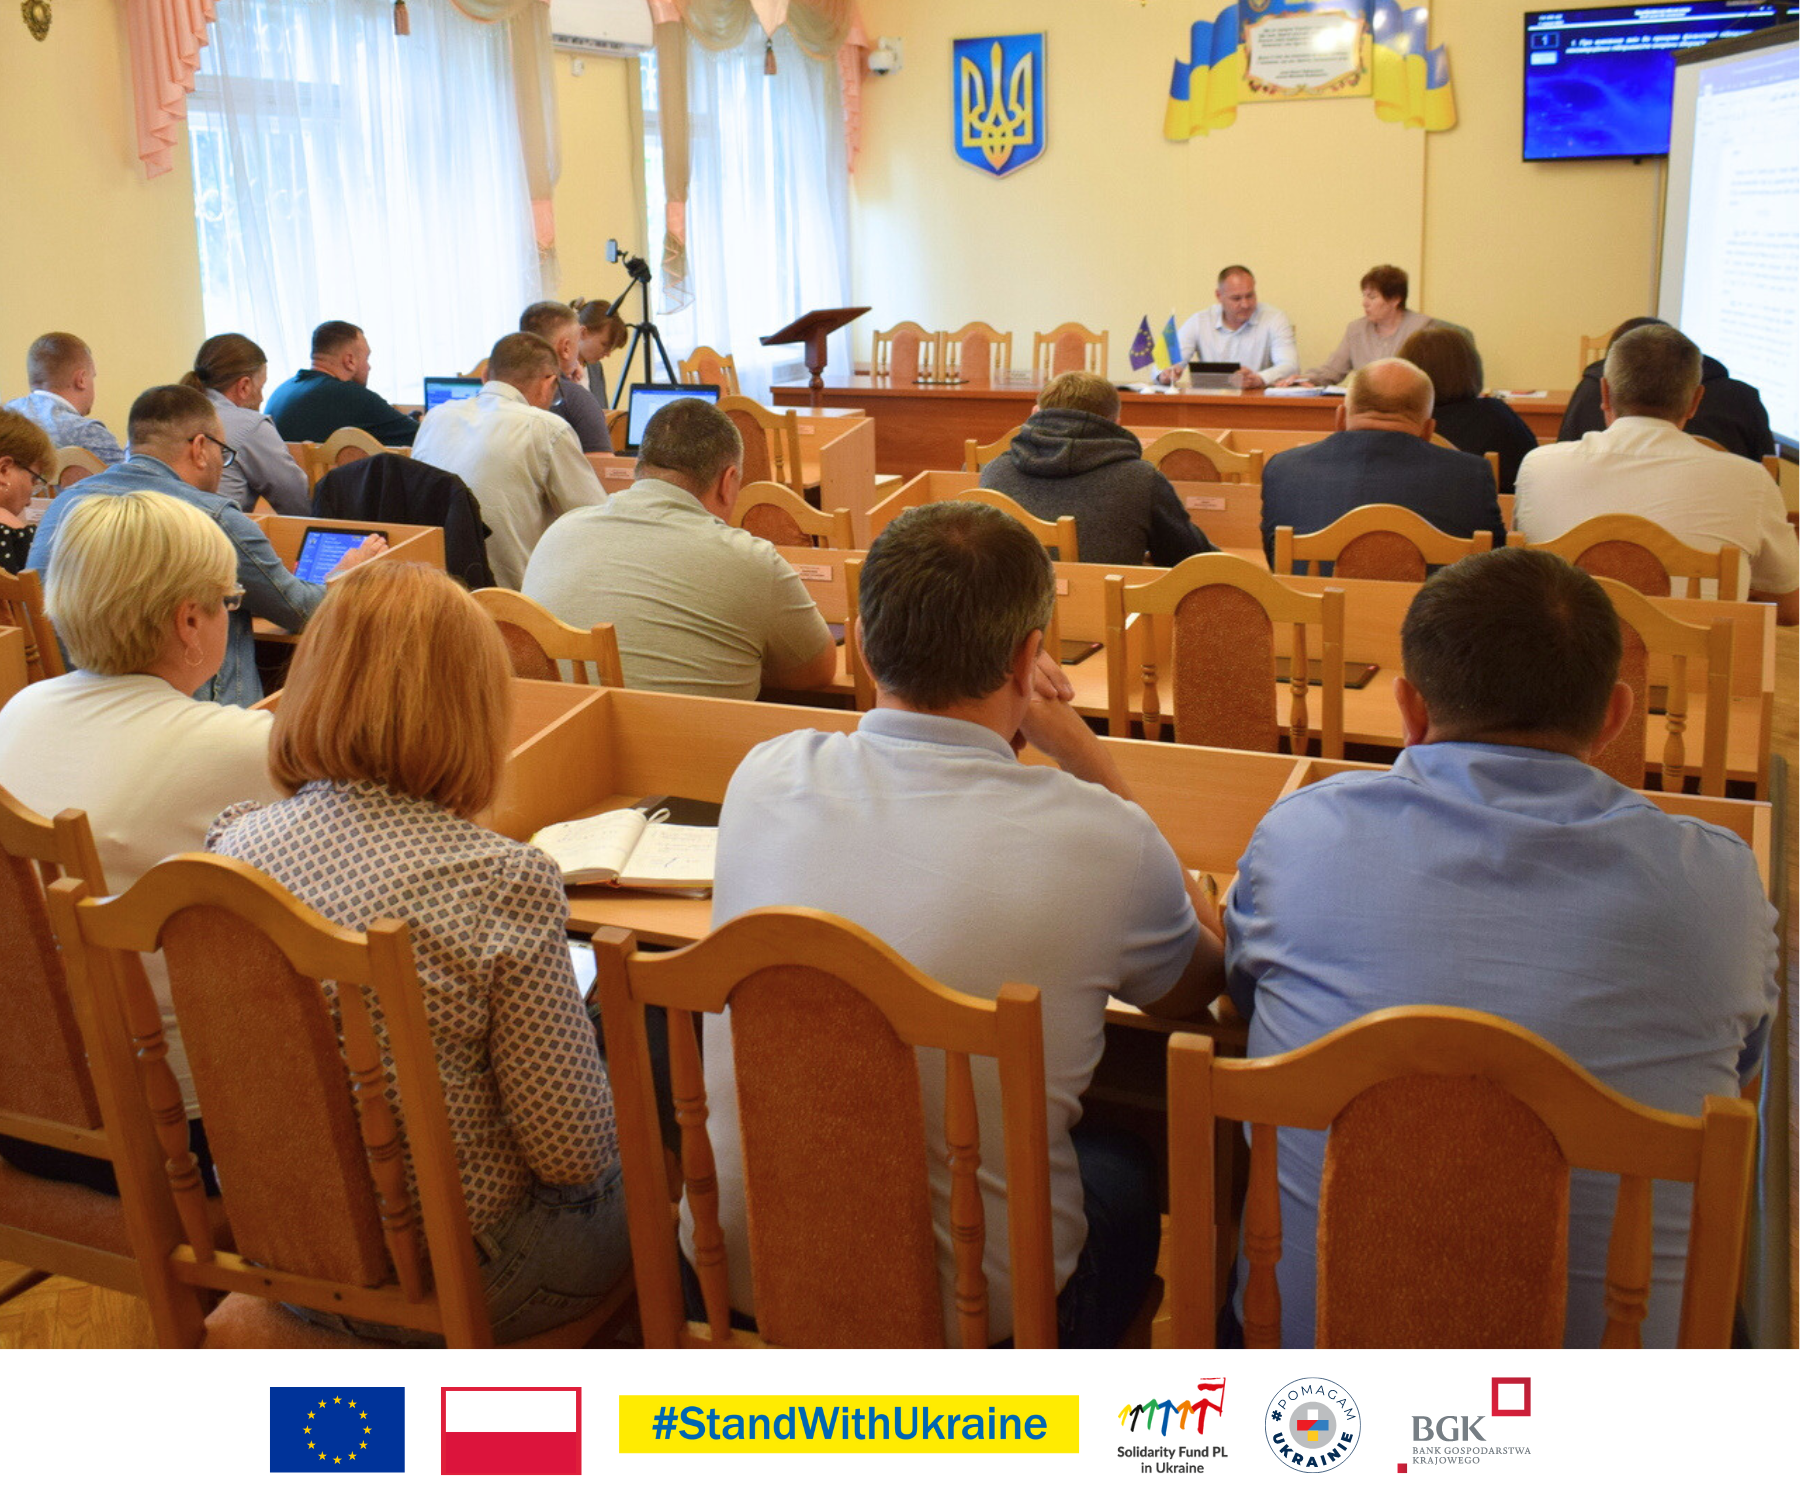 Сьогодні на Рівненщині створено перший з чотирьох центрів психосоціальної підтримки в рамках реалізації проєкту “Психосоціальна підтримка в Україні” PRO_MentalHealth